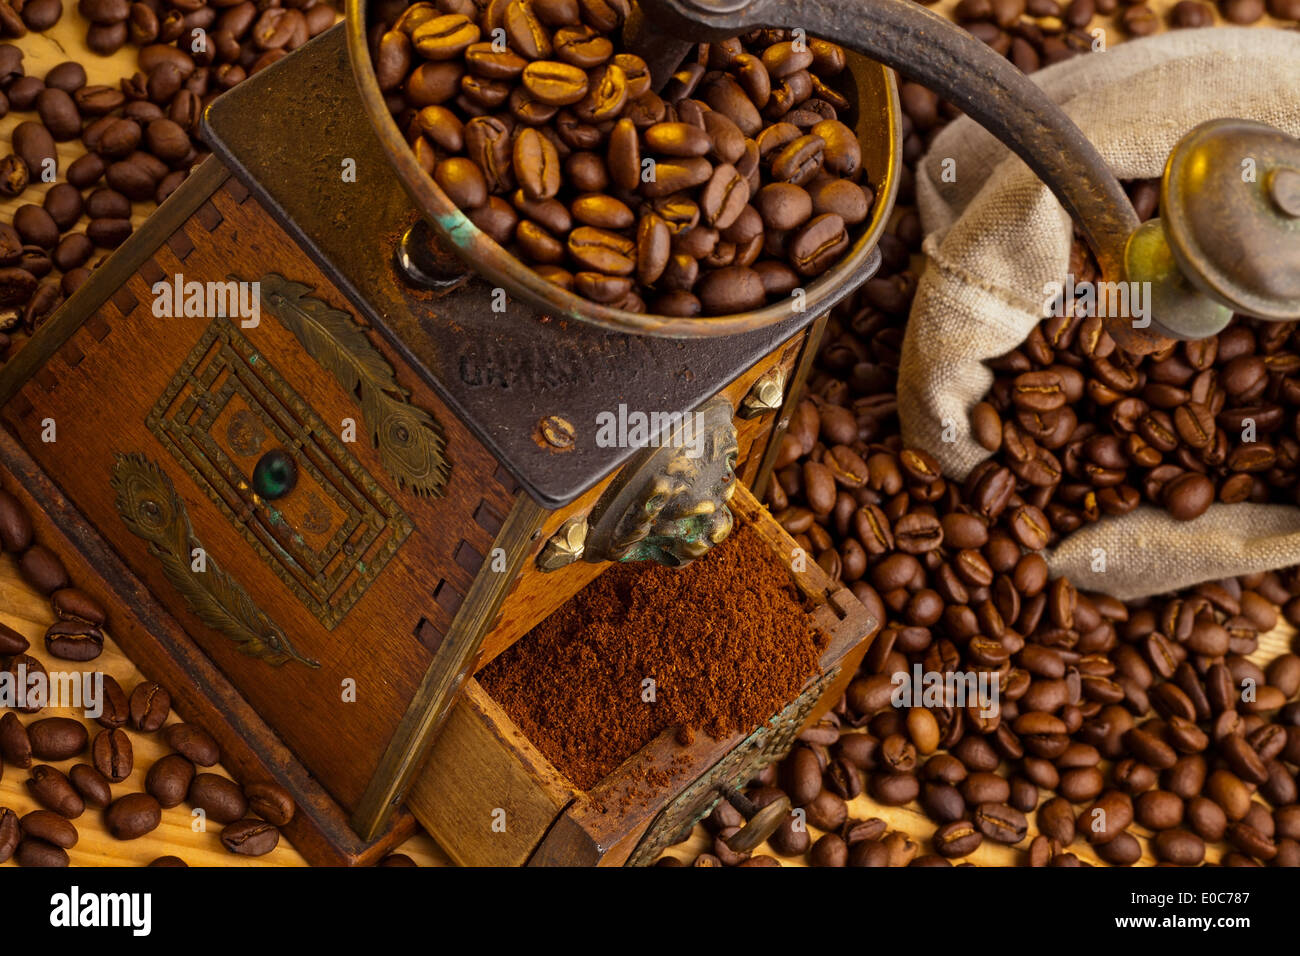 Many coffee beans lie beside a coffee grinder. Fresh ground coffee, Viele Kaffeebohnen liegen neben einer Kaffeemuehle. Frisch g Stock Photo